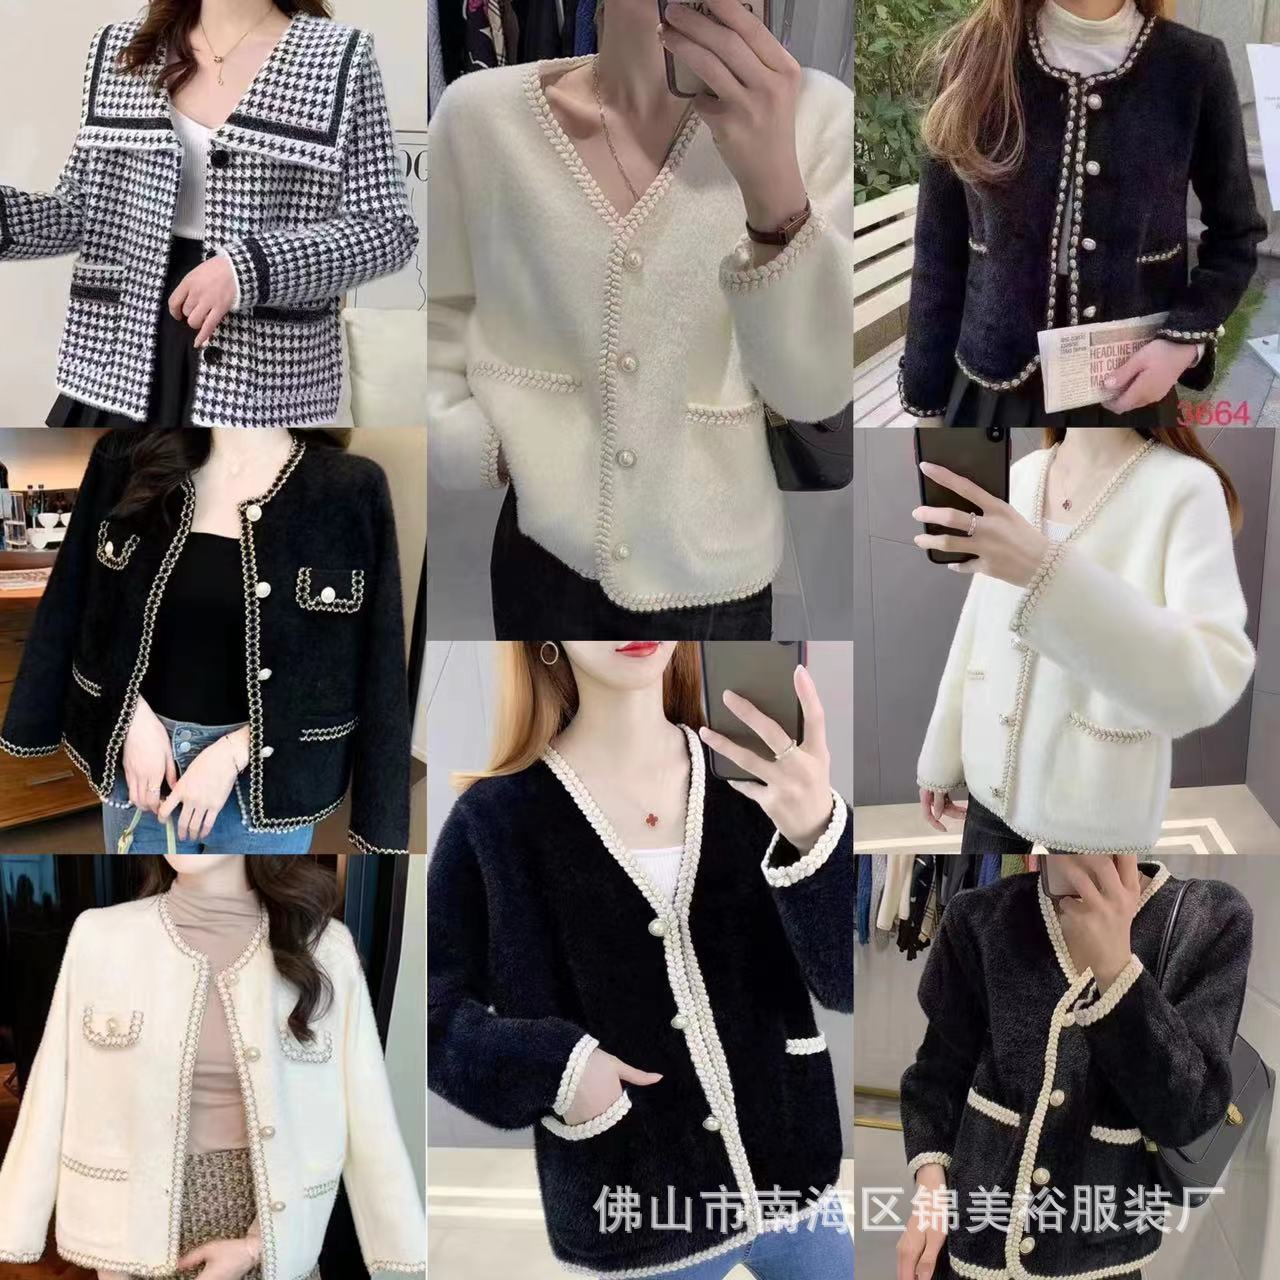 new classic style mink velvet coat women‘s spring and autumn korean style elegant socialite french short knitted sweater women‘s cardigan